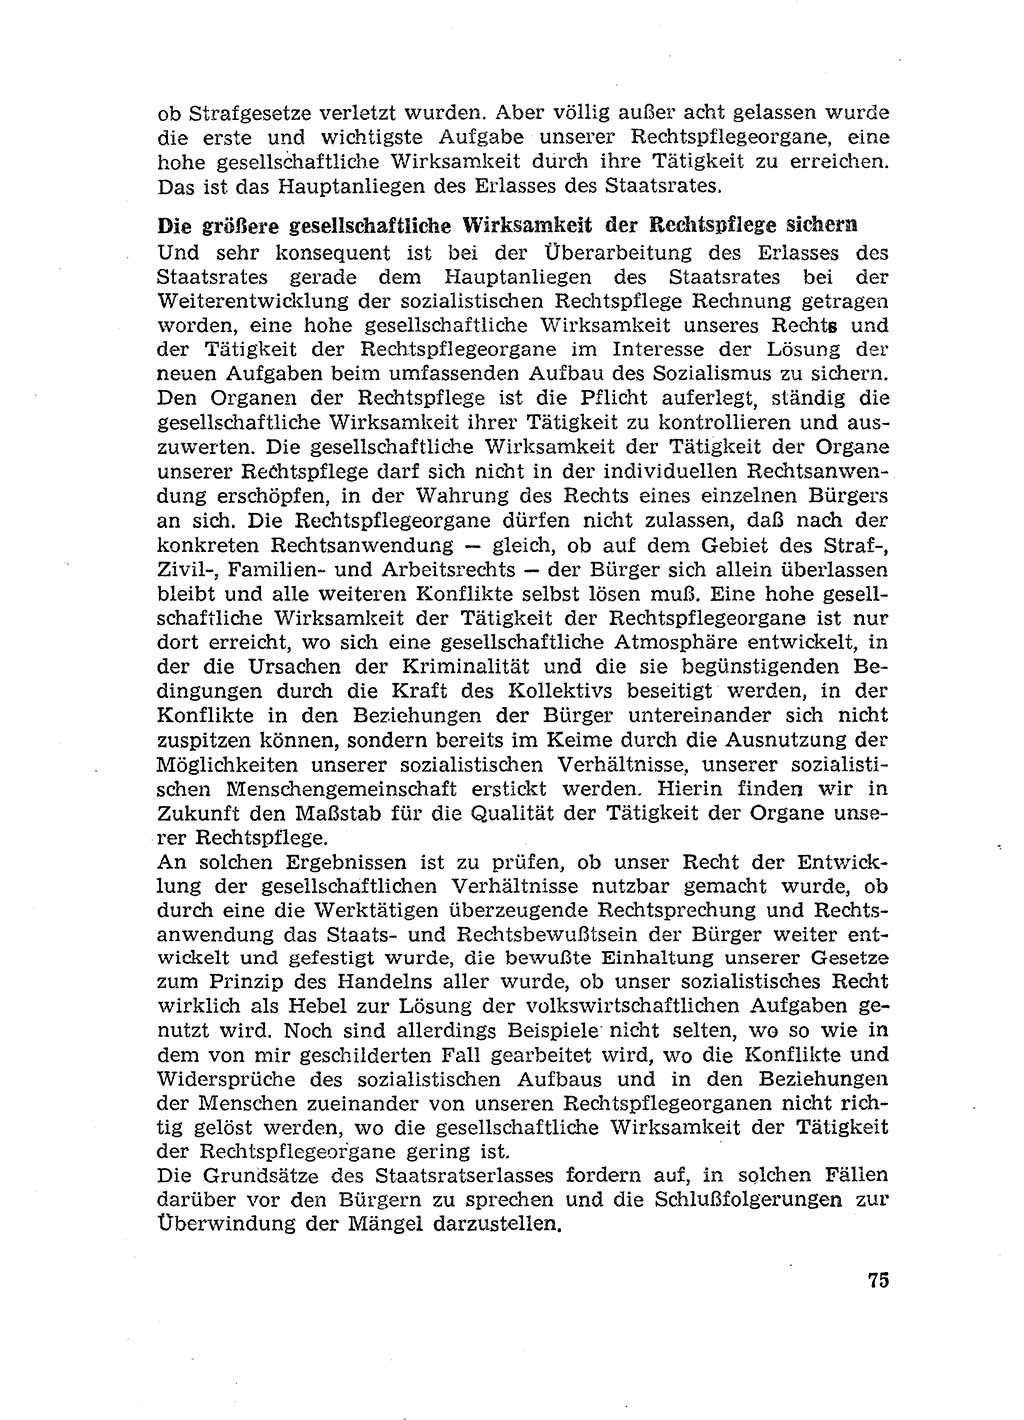 Rechtspflegeerlaß [Deutsche Demokratische Republik (DDR)] 1963, Seite 75 (R.-Pfl.-Erl. DDR 1963, S. 75)